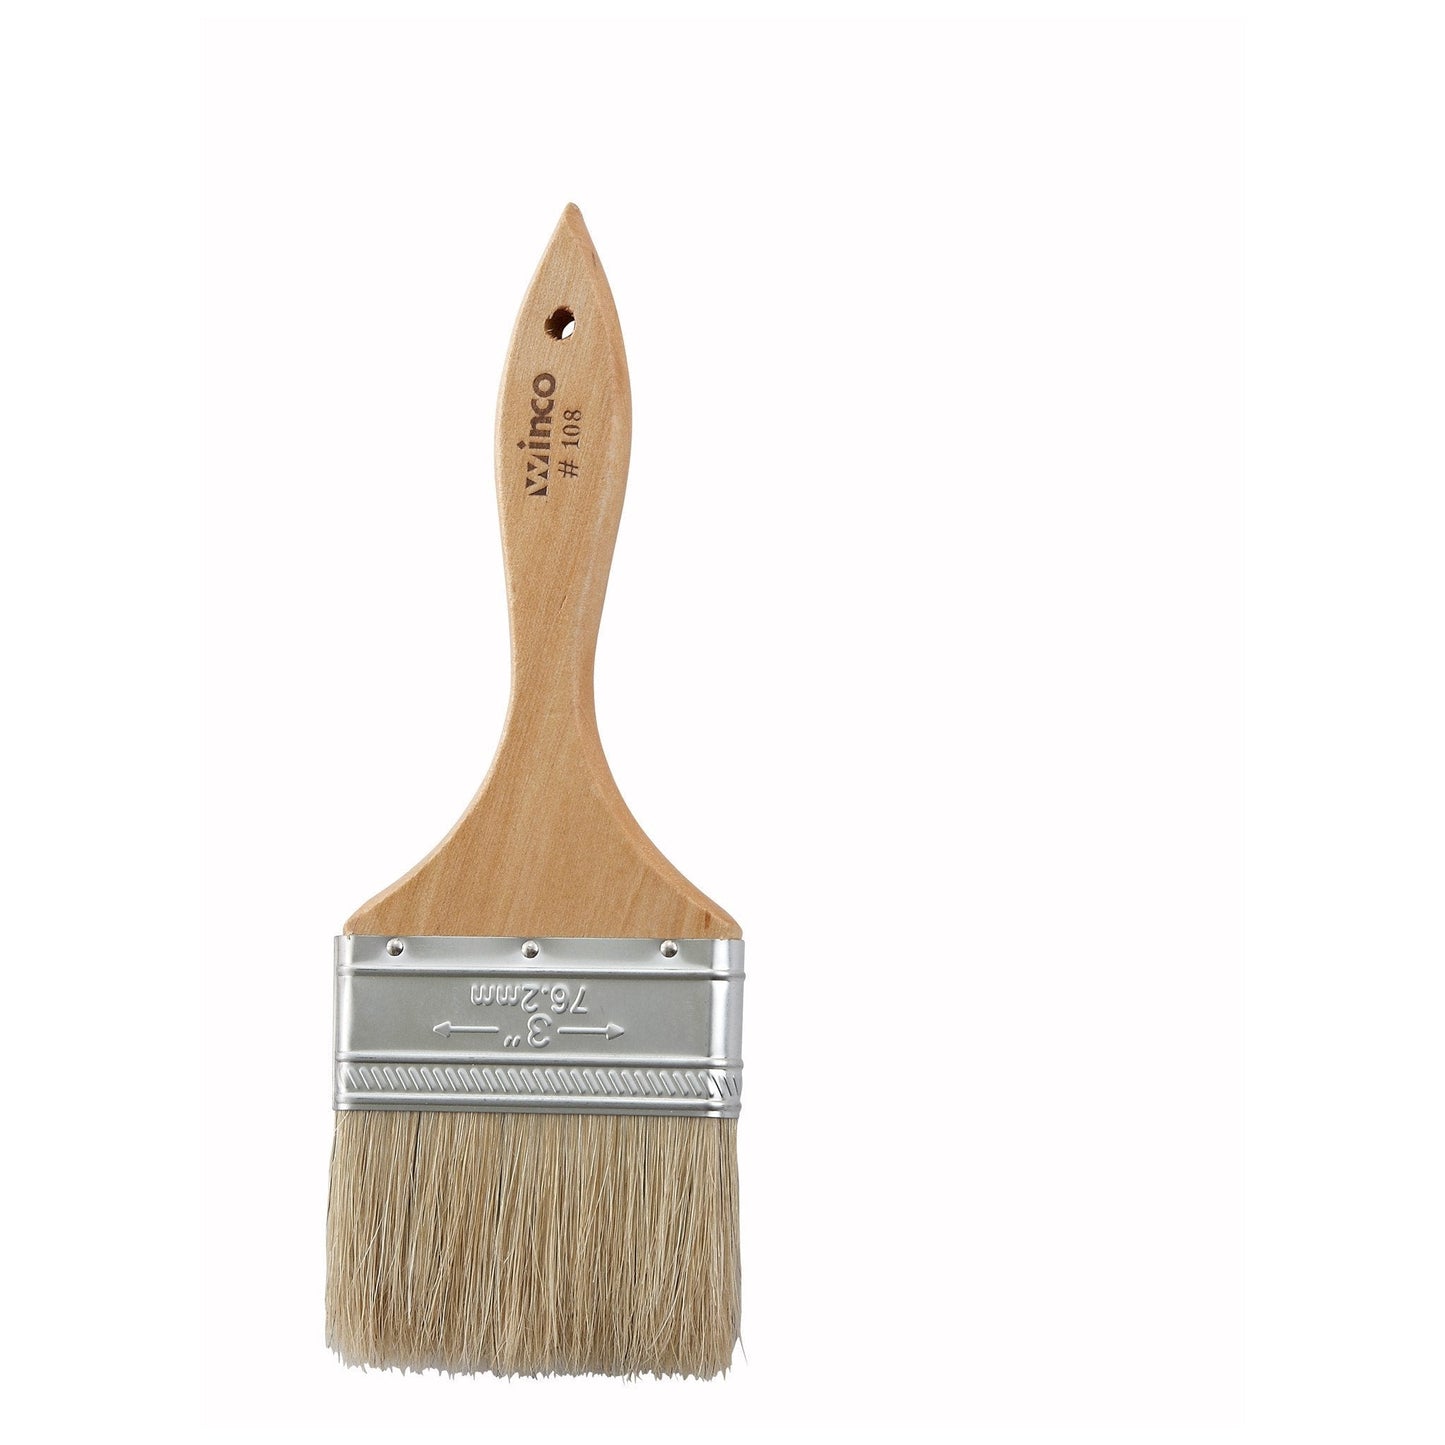 Pastry Brush/Basting Brush - Natural Boar Hair (Metal Ferrule) - Flat - 3"